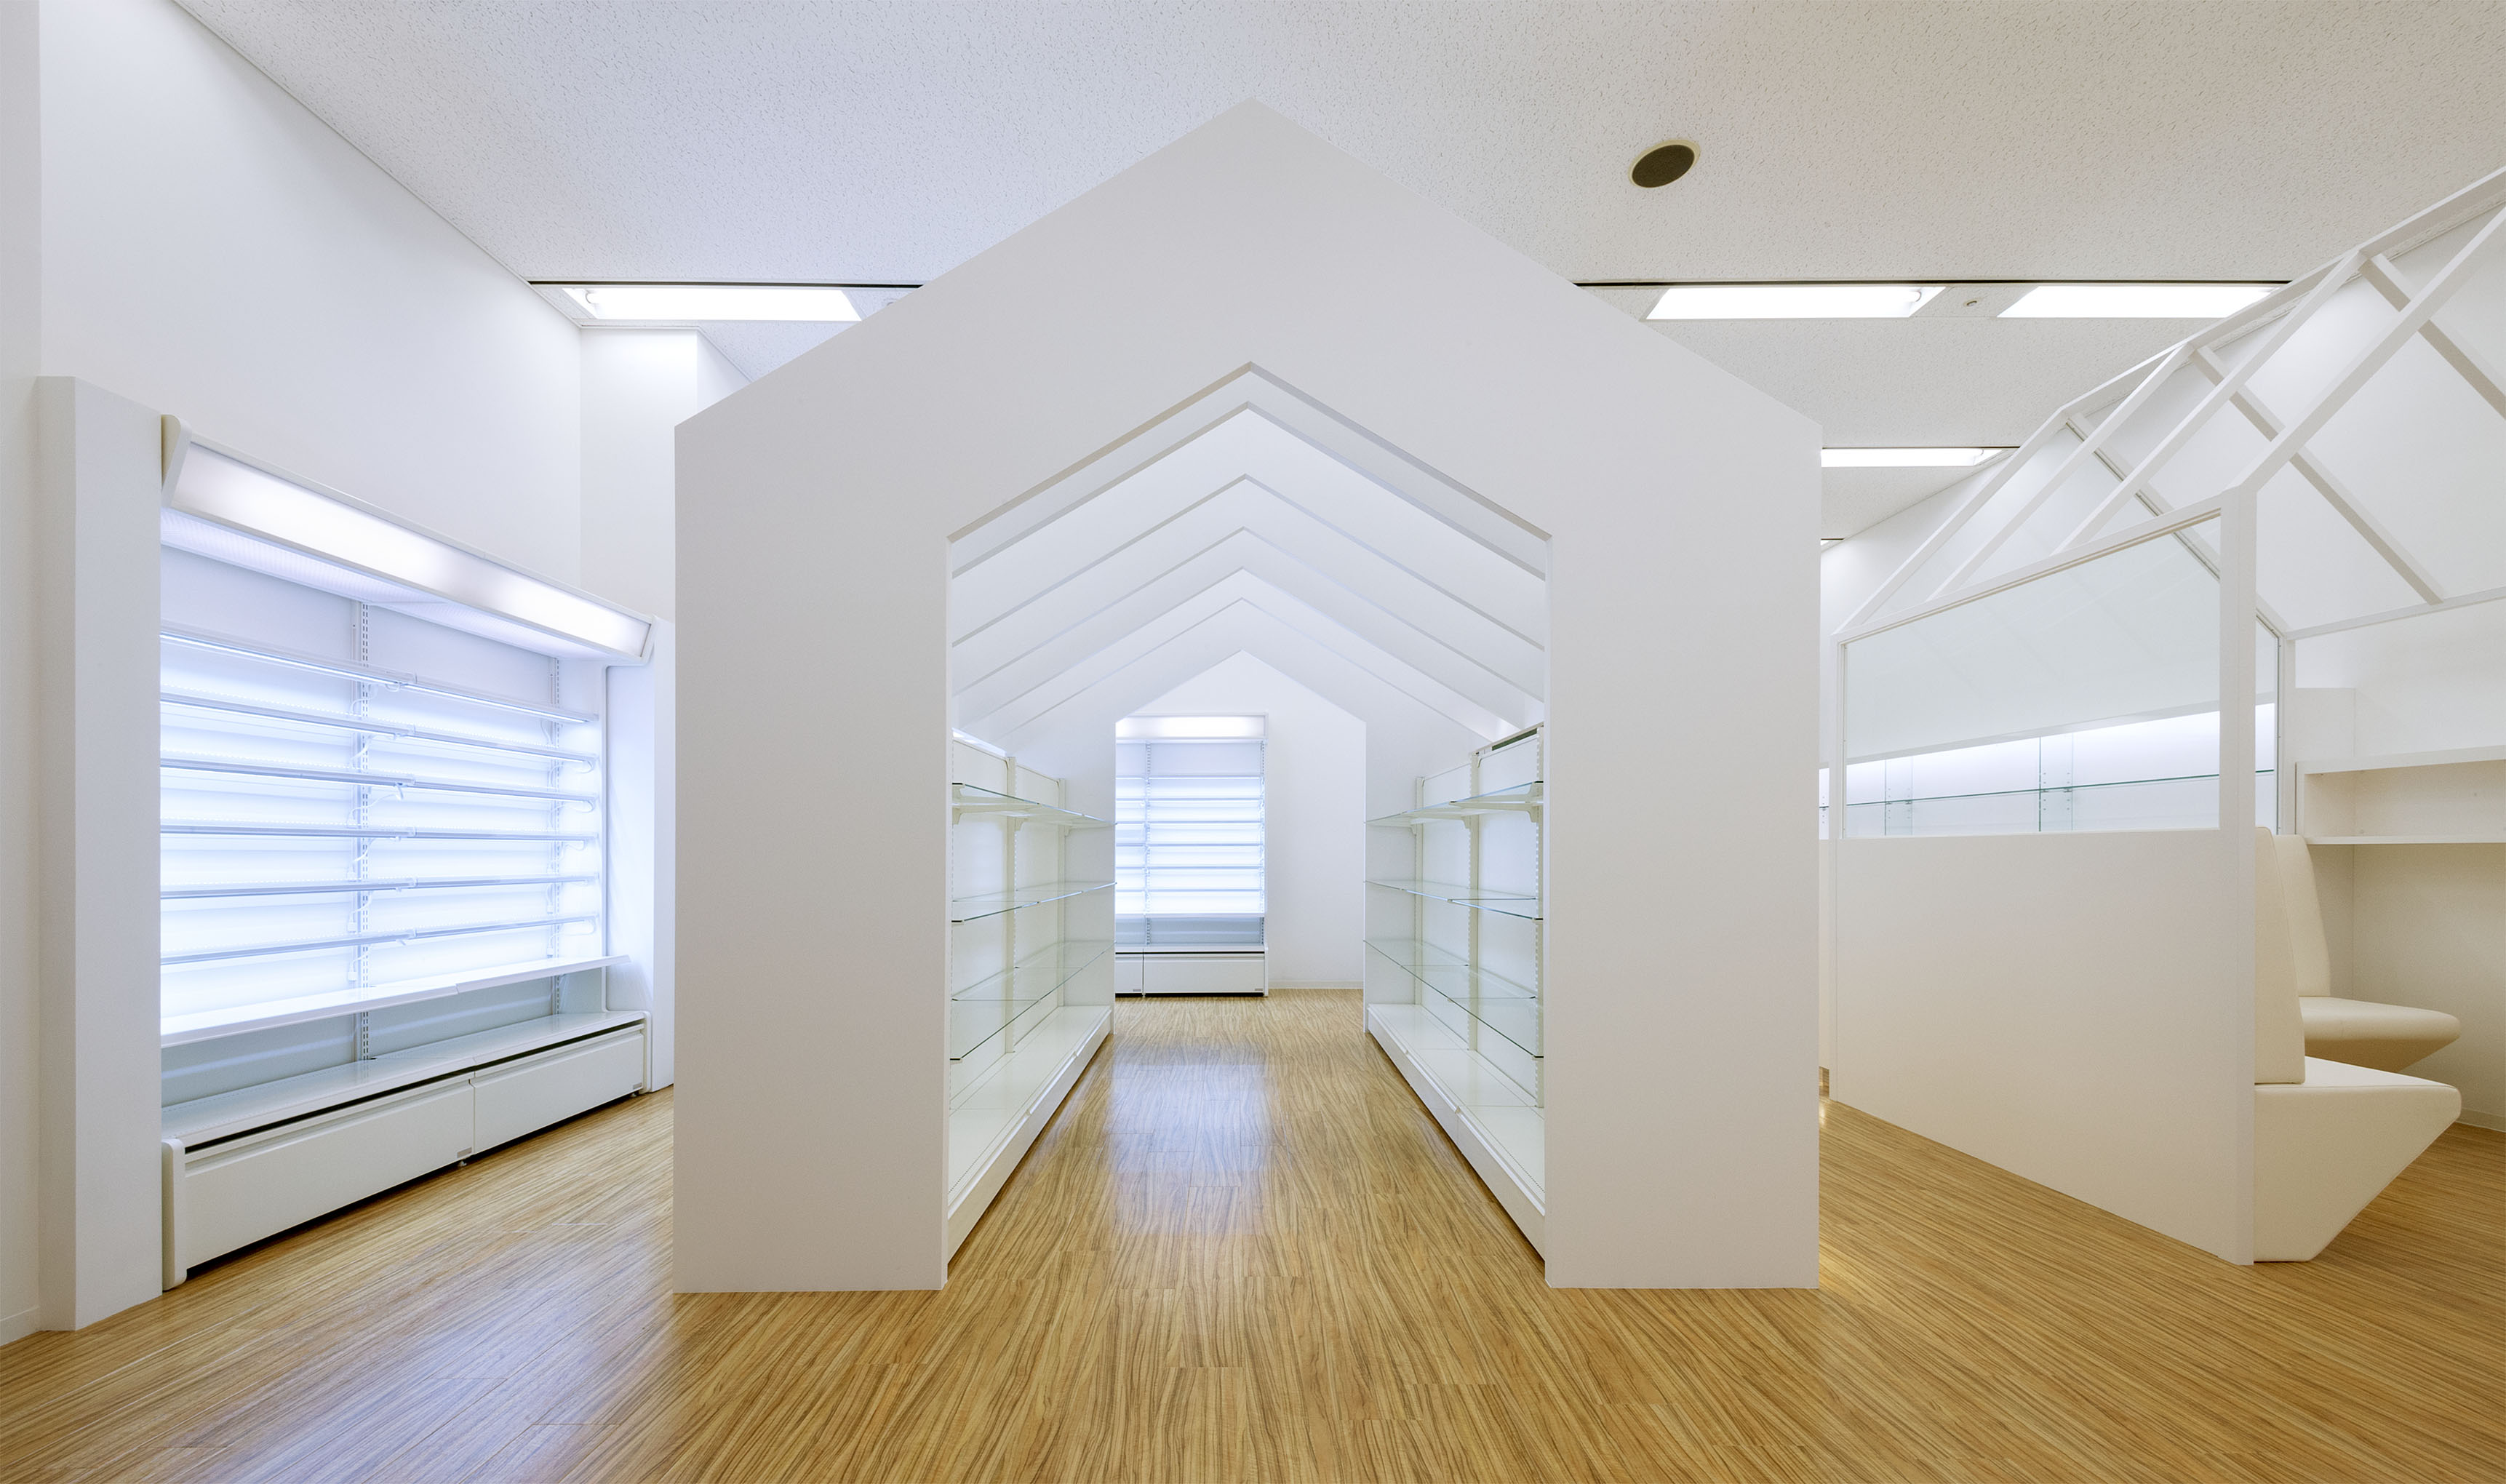 平岡建築デザインが設計した京都・大阪・兵庫の調剤薬局